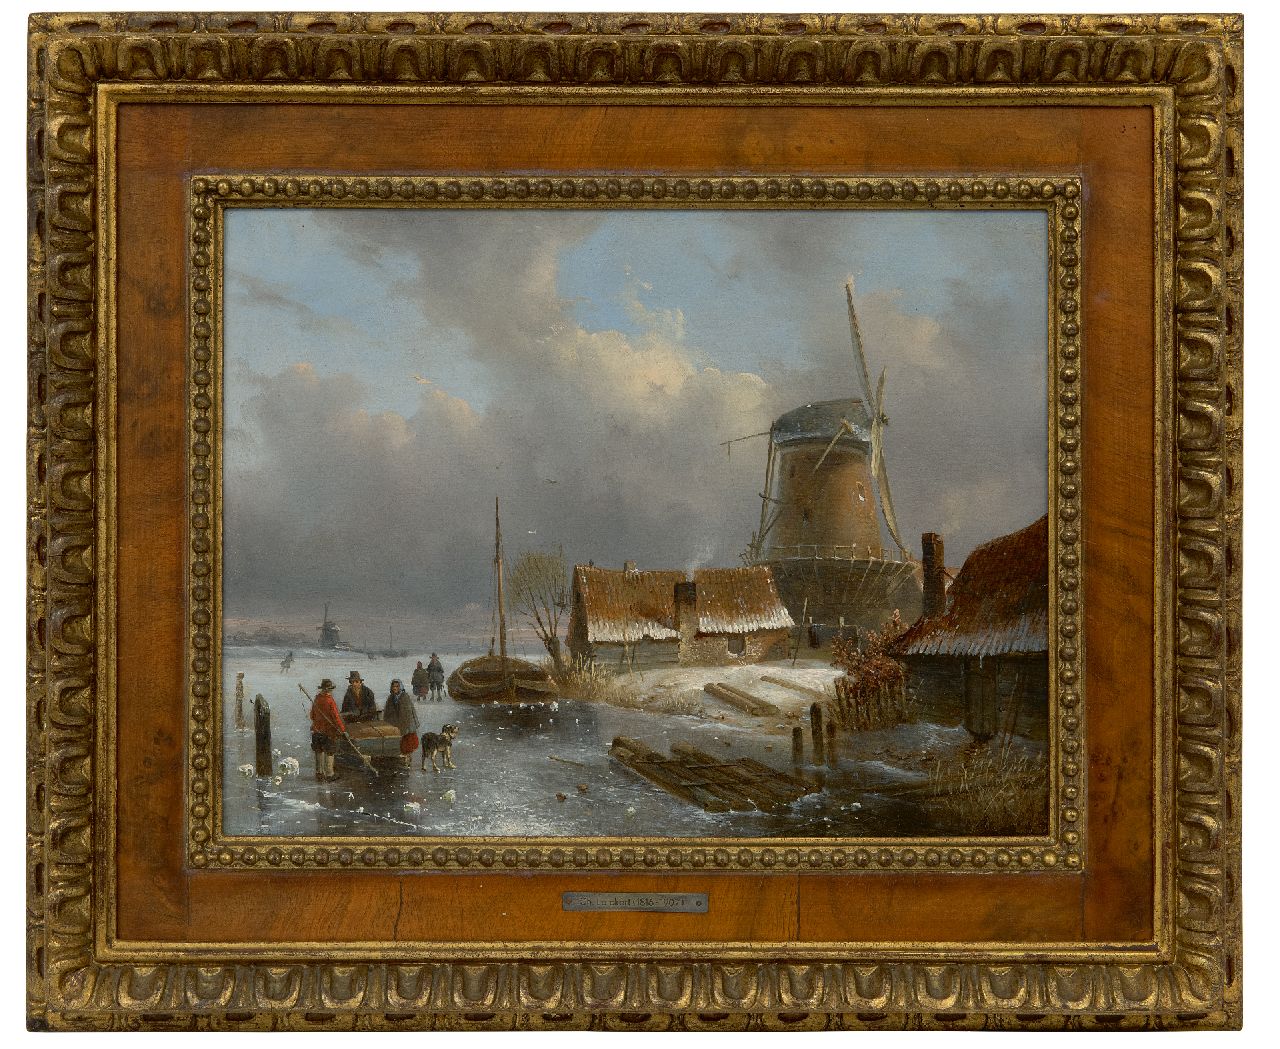 Leickert C.H.J.  | 'Charles' Henri Joseph Leickert | Schilderijen te koop aangeboden | Hollands winterlandschap met goederenslee en figuren op het ijs, olieverf op paneel 24,4 x 32,5 cm, gesigneerd rechtsonder